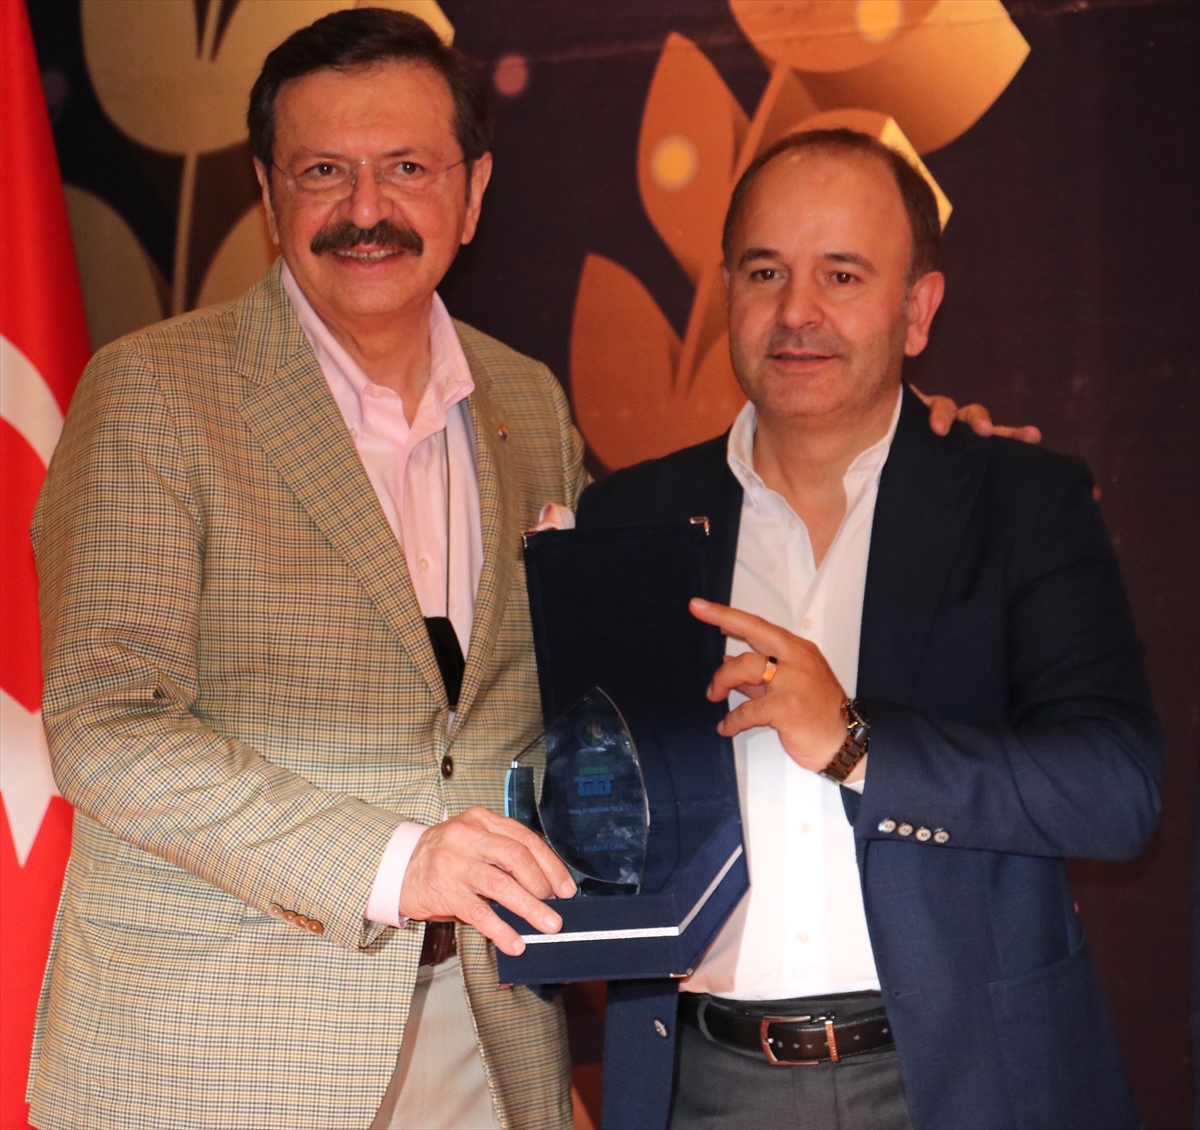 TOBB Başkanı Hisarcıklıoğlu, “ETB Ekonomiye Değer Katanlar Ödül Töreni”nde konuştu: